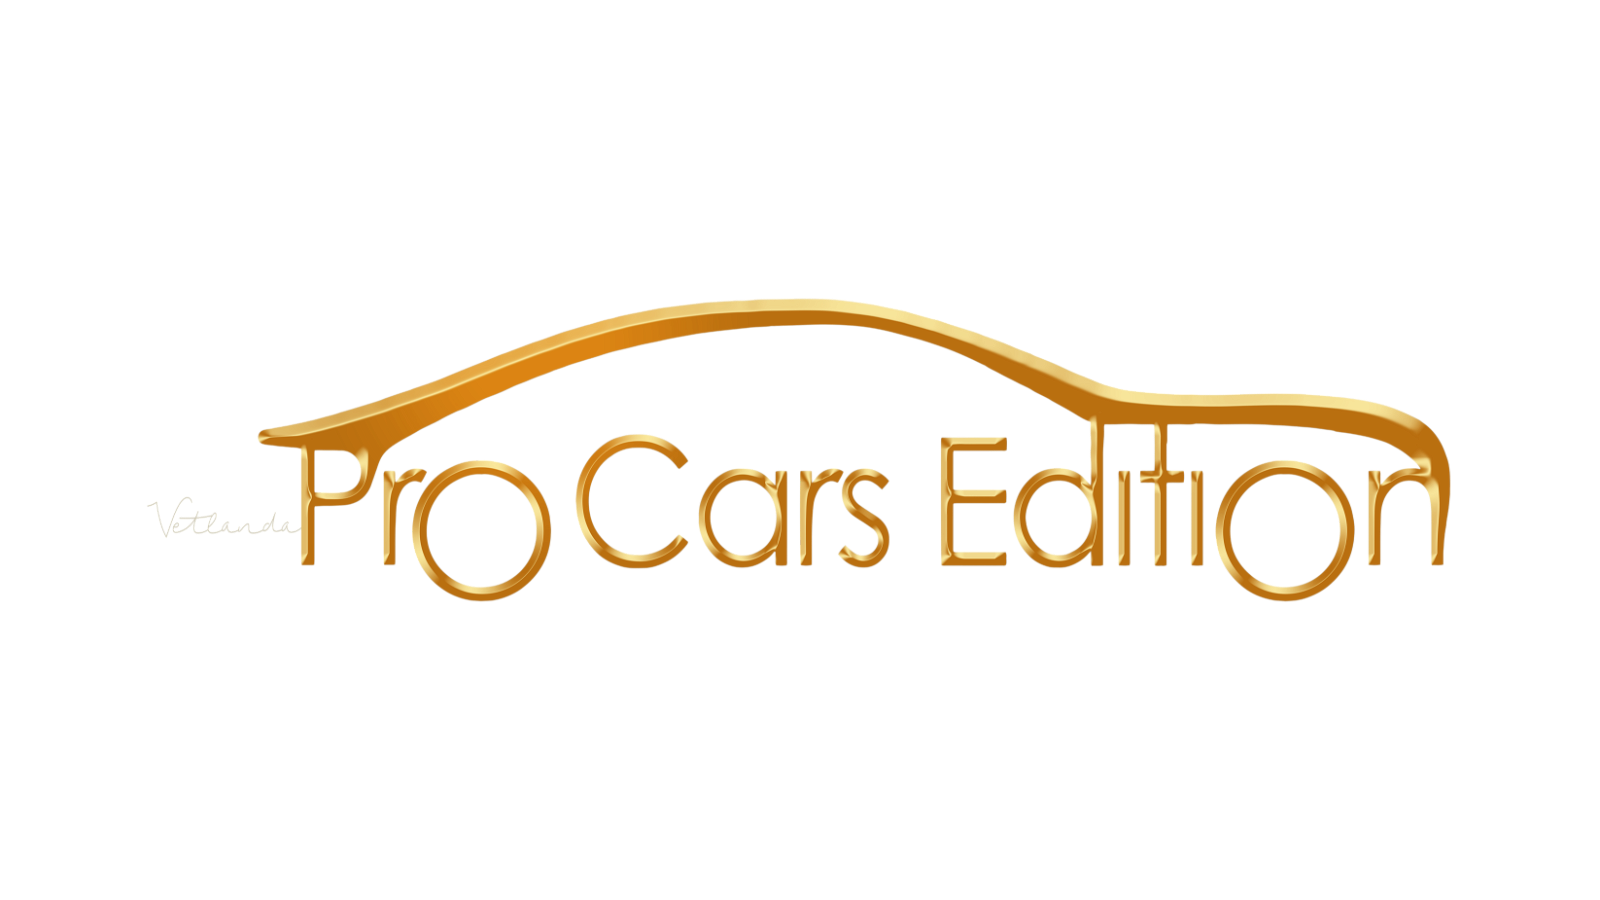 Pro Cars Edition